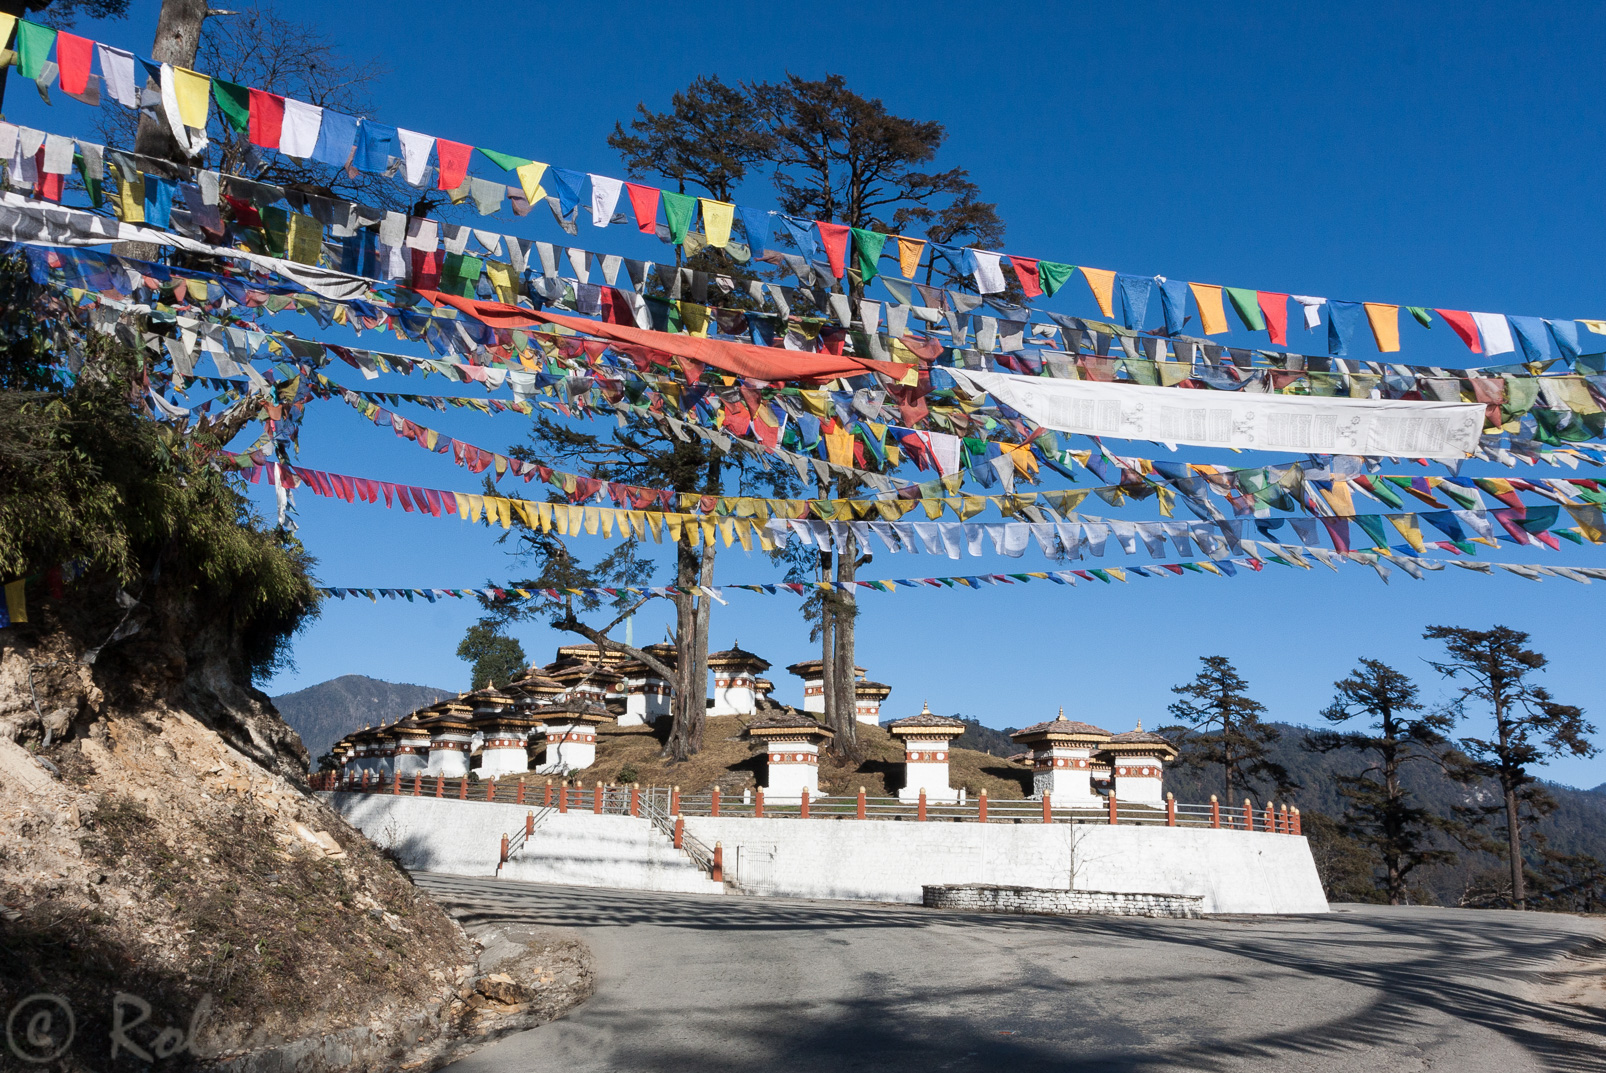 Druk Wangyal, ensemble impressionant de 108 chortens construits pour commémorer la victoire bhoutanaise en 2003 sur les Bodos et les séparatistes indiens.